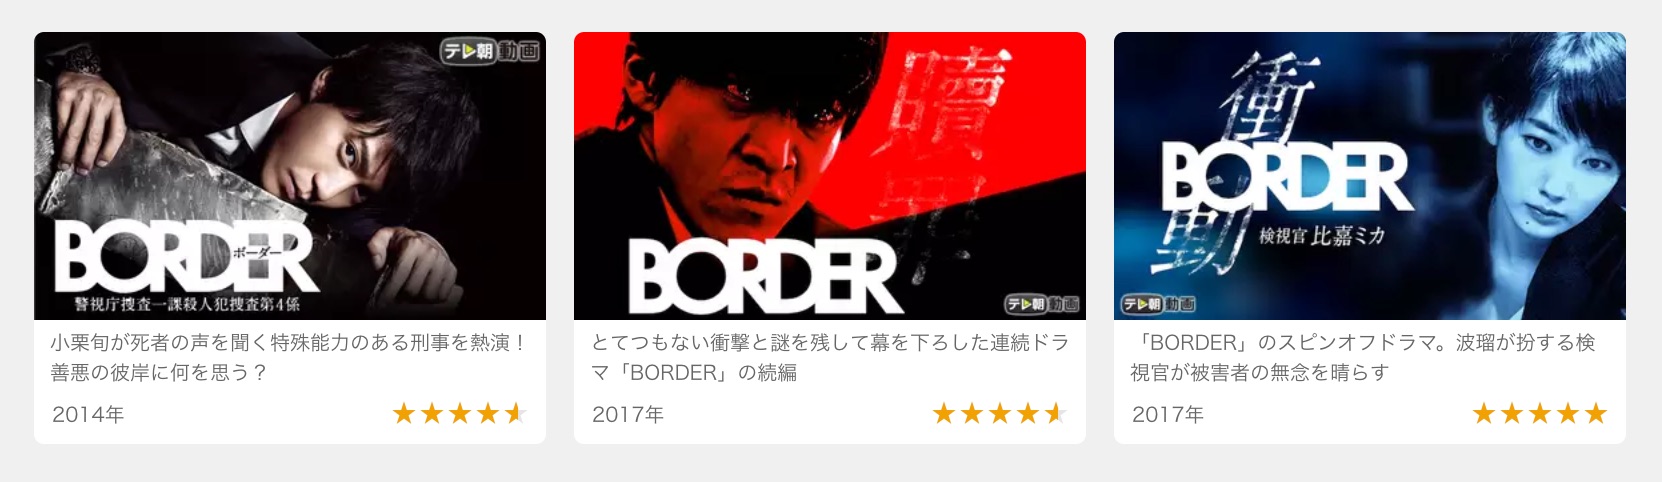 Border ドラマ 続編 Hd壁紙画像